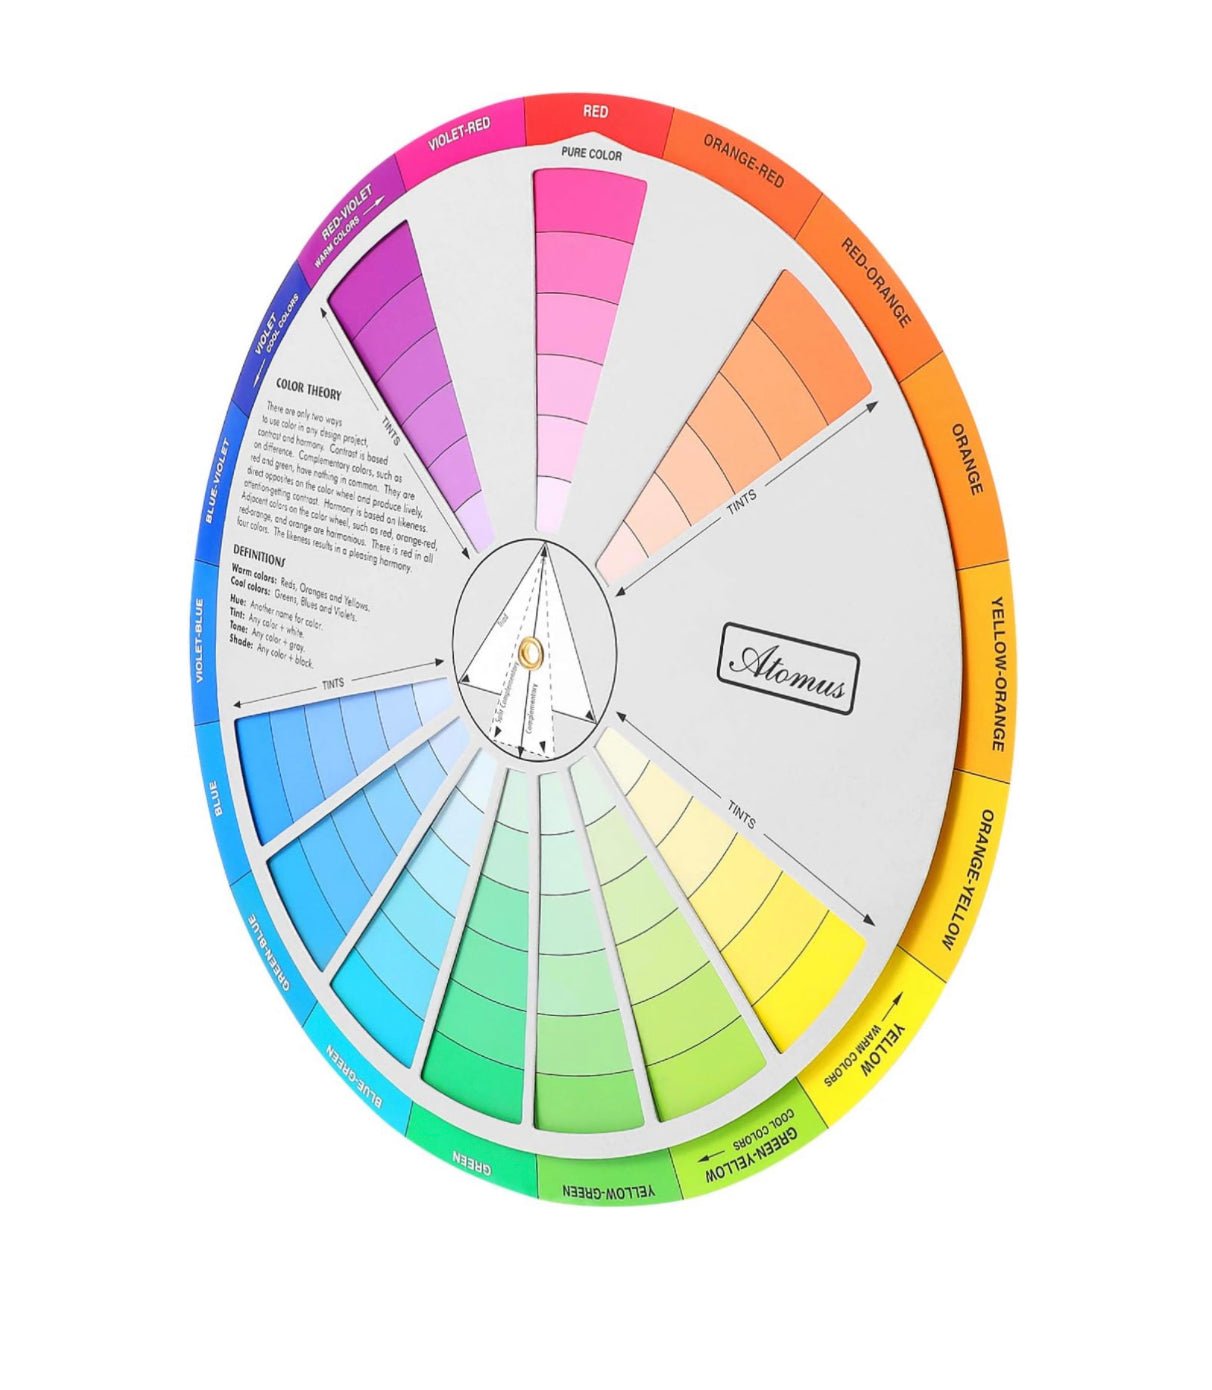 Creative Color Wheel